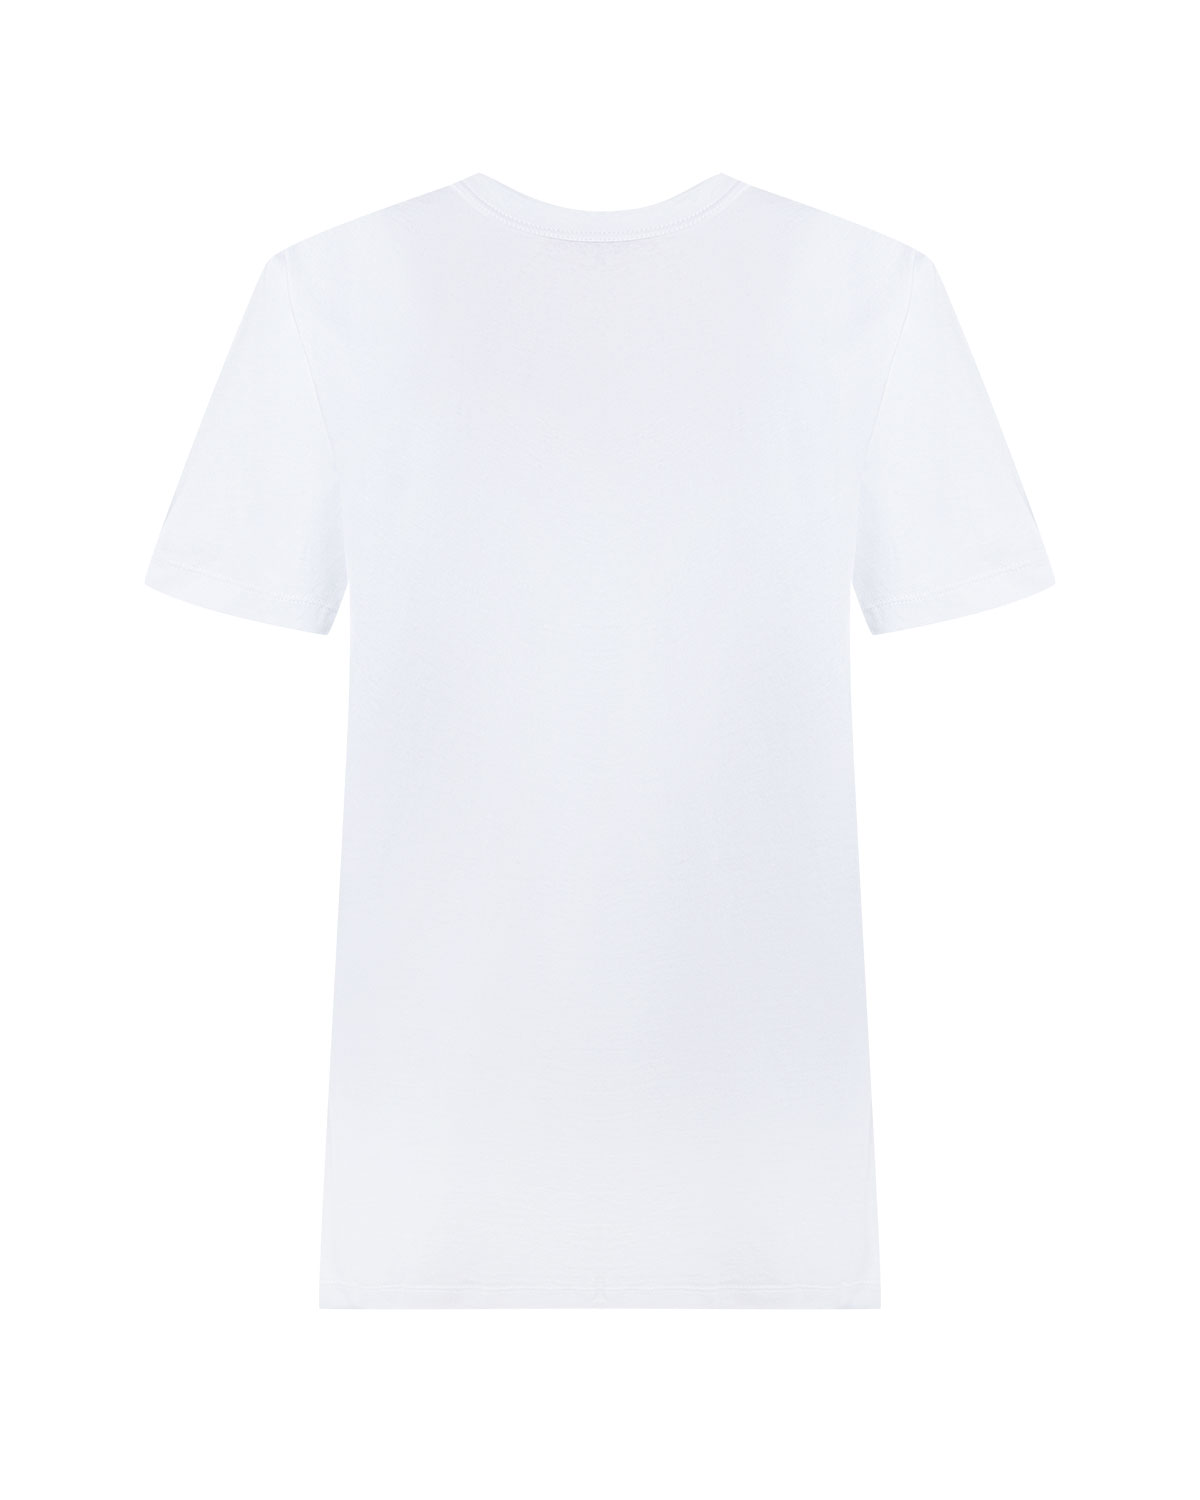 Белая футболка oversize c логотипом No. 21, размер 40, цвет белый - фото 5